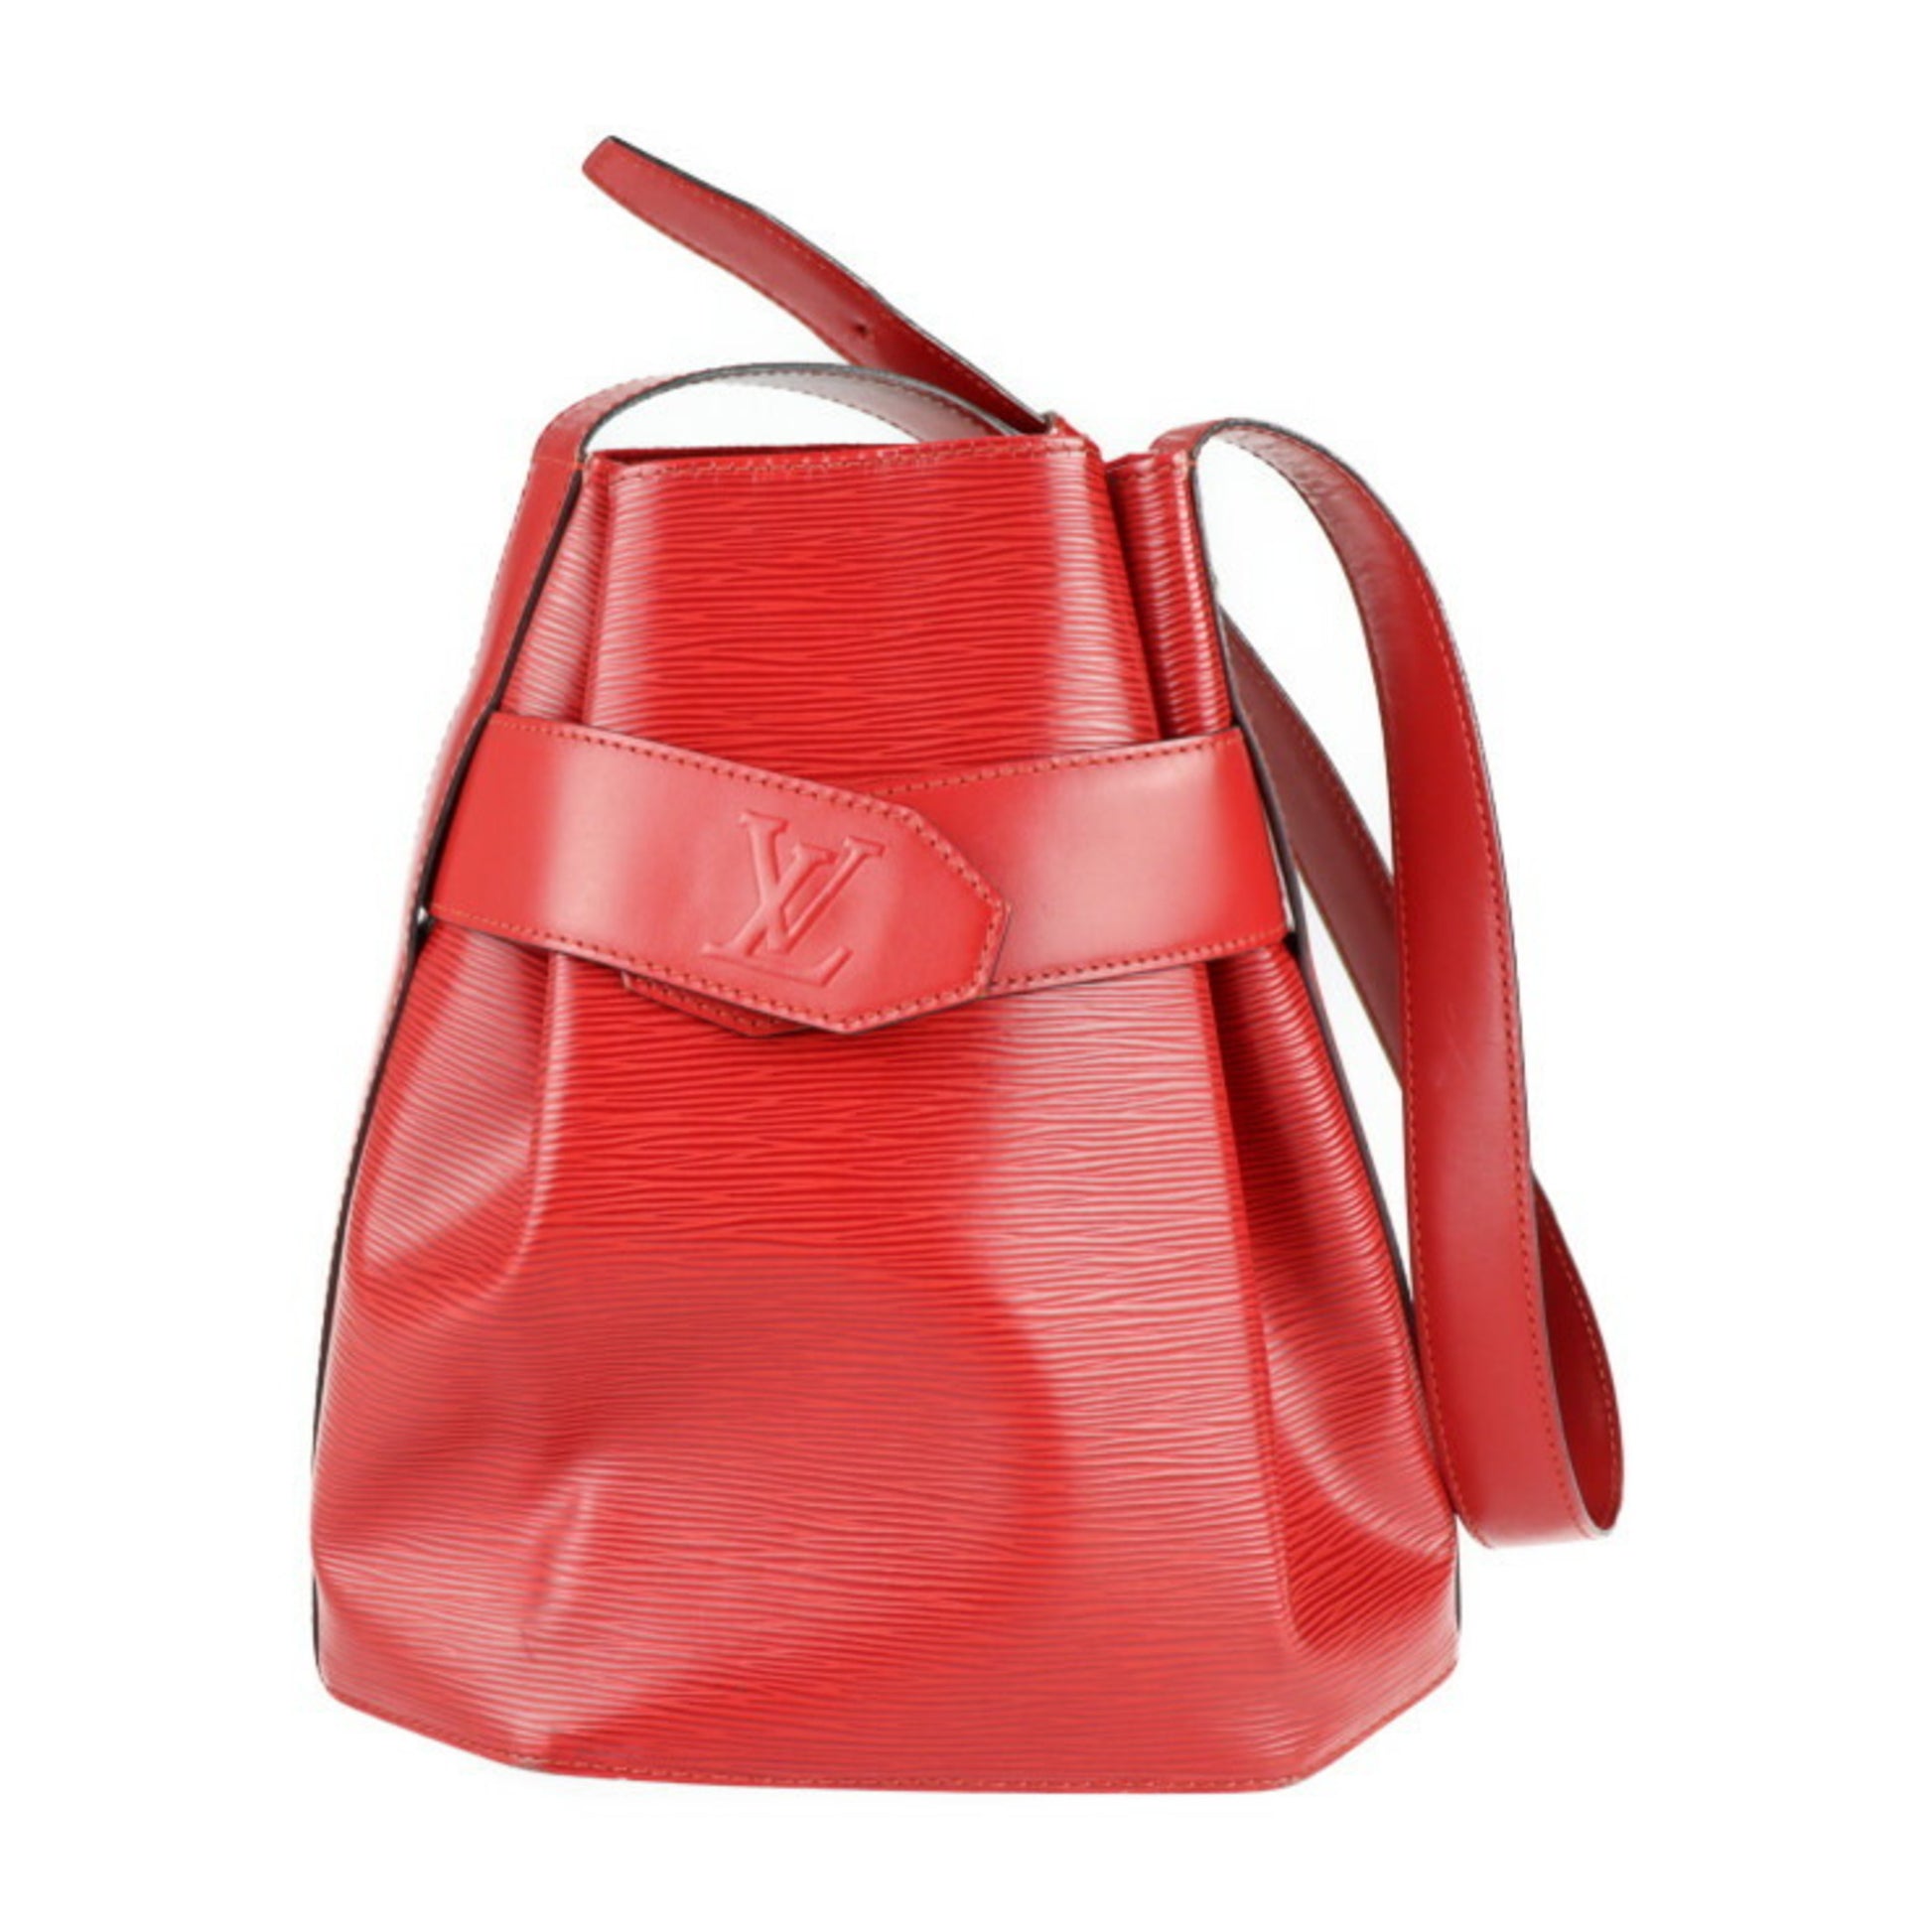 Louis Vuitton Sac de Paule PM - Red Shoulder Bags, Handbags